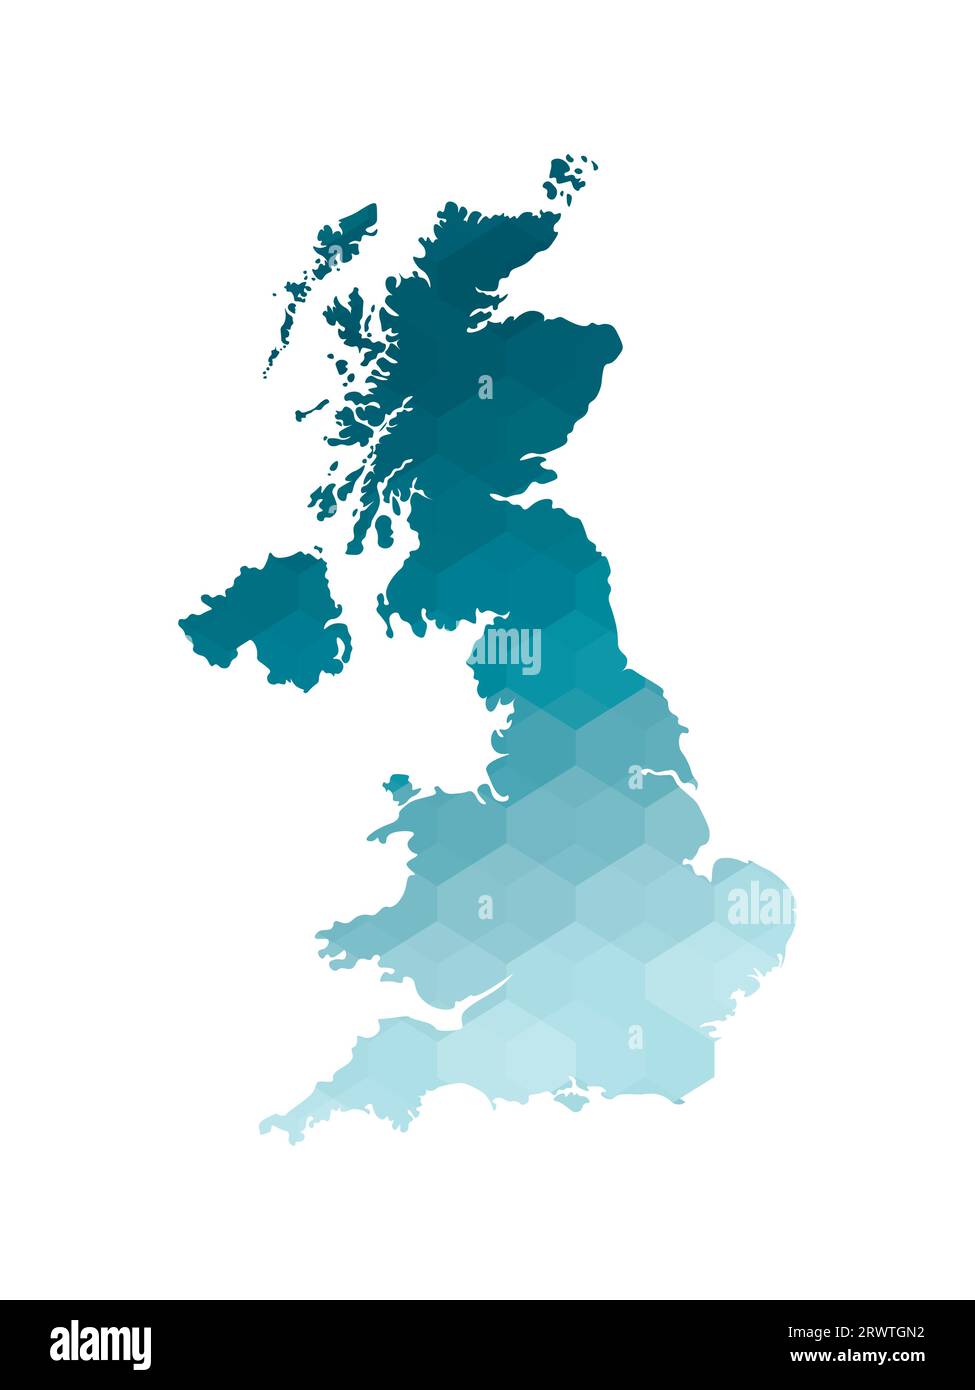 Vektor-isoliertes Illustrationssymbol mit vereinfachter blauer Silhouette der Karte des Vereinigten Königreichs Großbritannien und Nordirland (UK). Polygonale Dichtung Stock Vektor